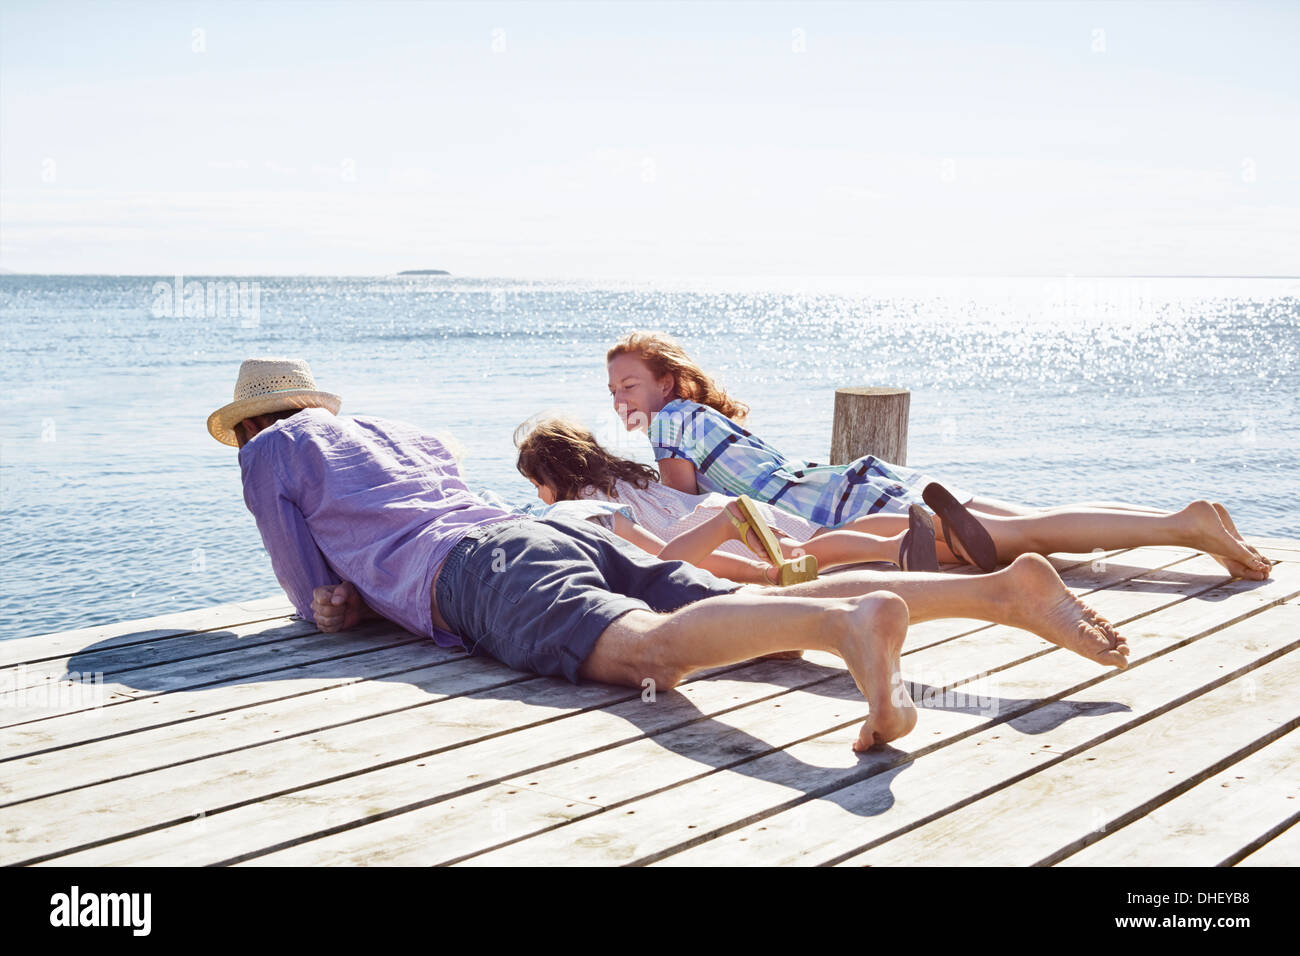 Family lying on pier, Utvalnas, Gavle, Sweden Stock Photo